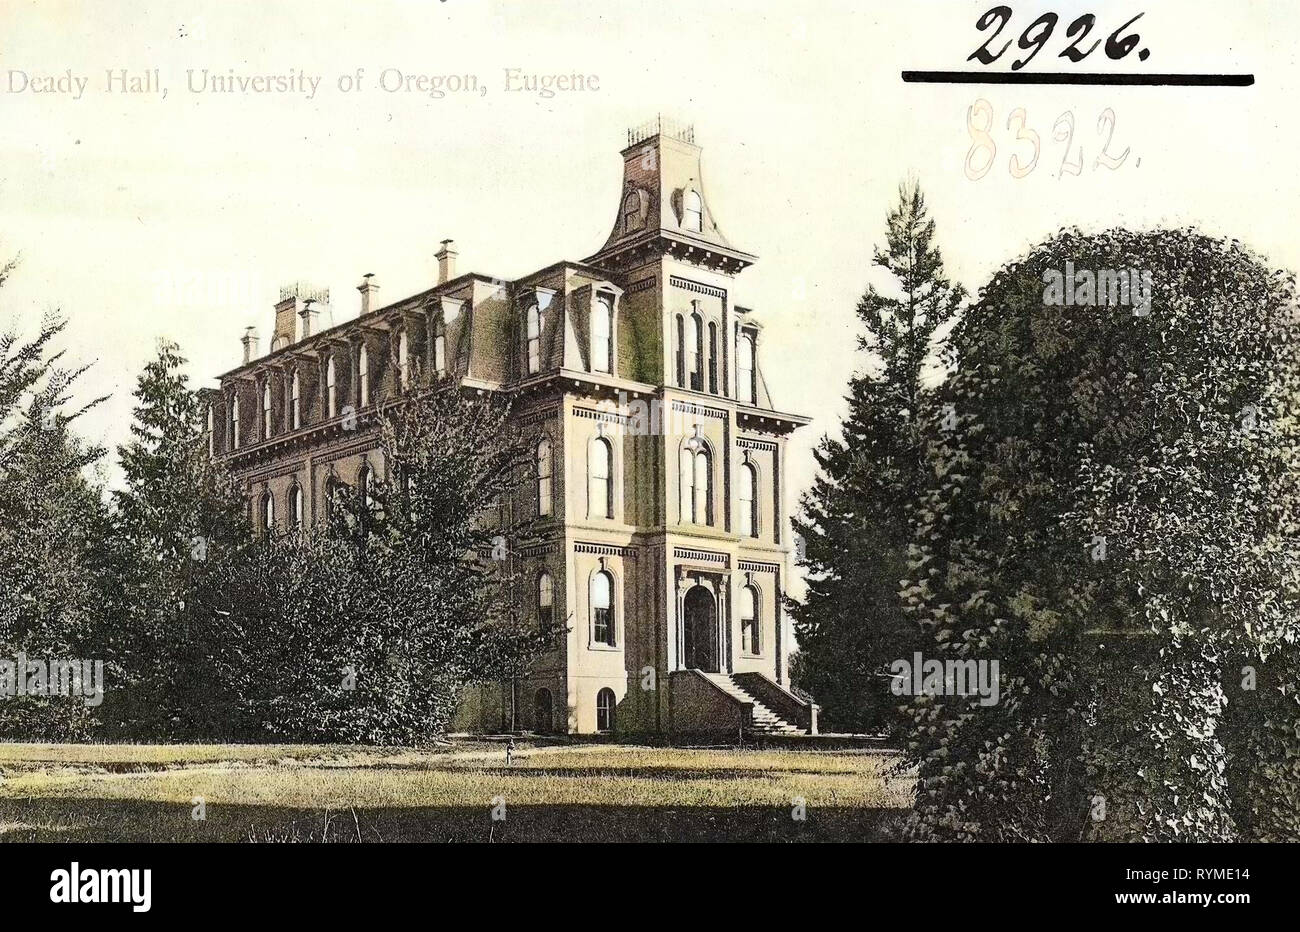 Università e collegi in Oregon, edifici di Eugene, Oregon, 1906, Eugene, Ore., Deady Hall, University of Oregon, Stati Uniti d'America Foto Stock